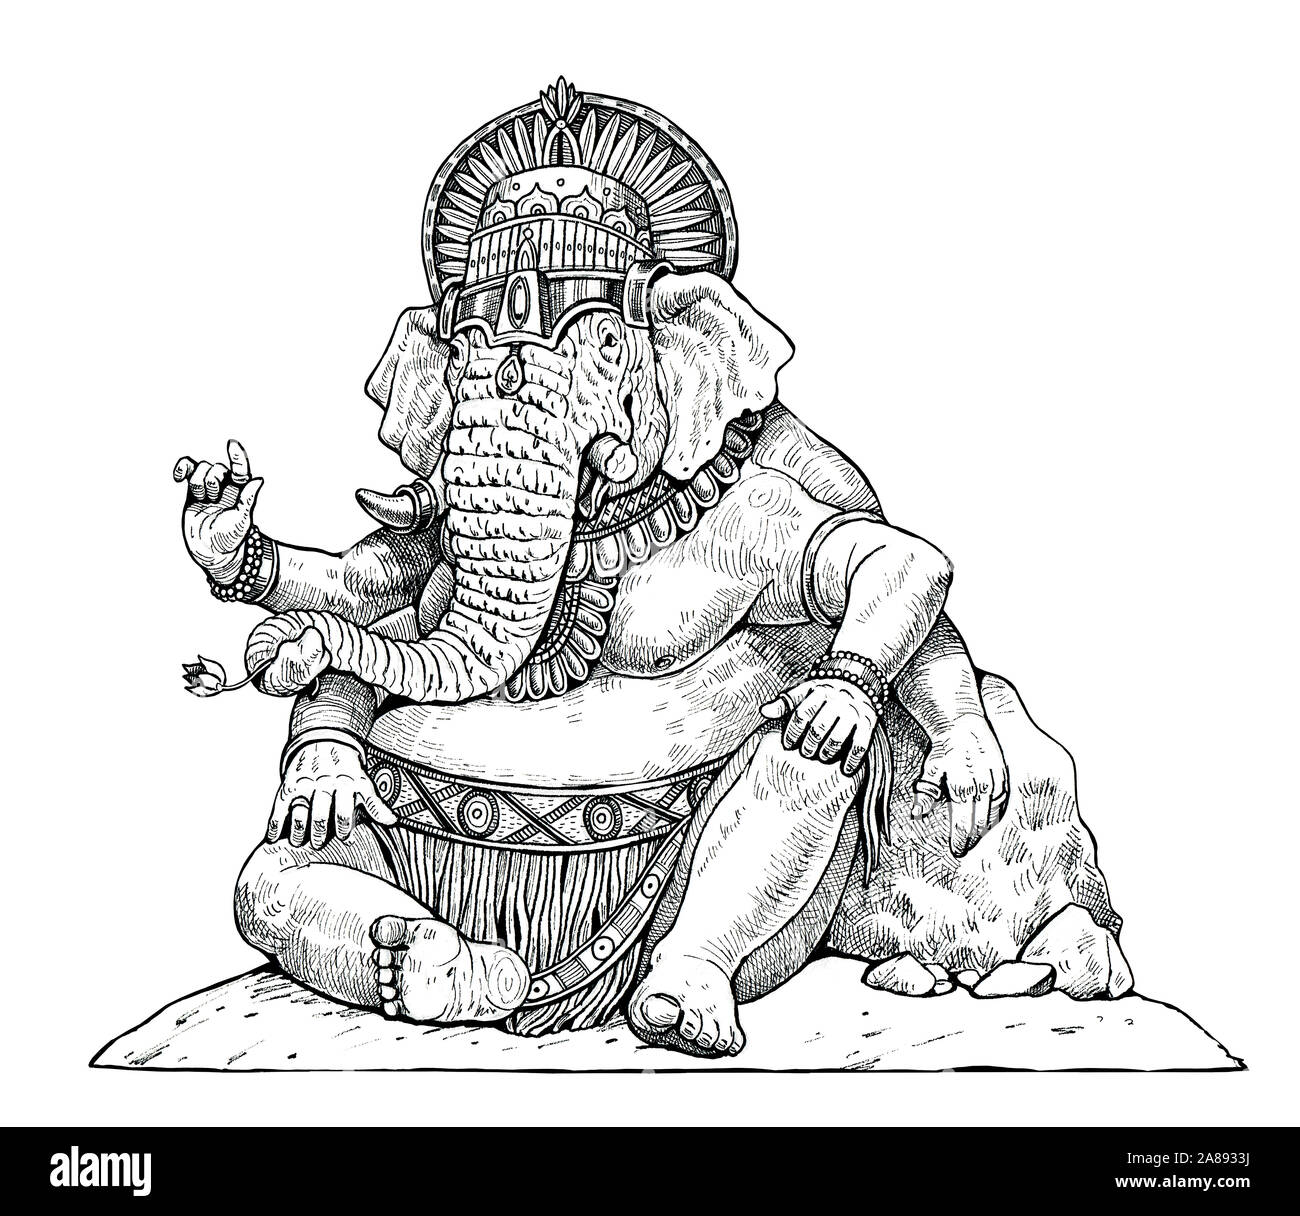 Ganesha - dieu indien. La moitié de la moitié de l'éléphant. Iluustartion fantaisie. Banque D'Images